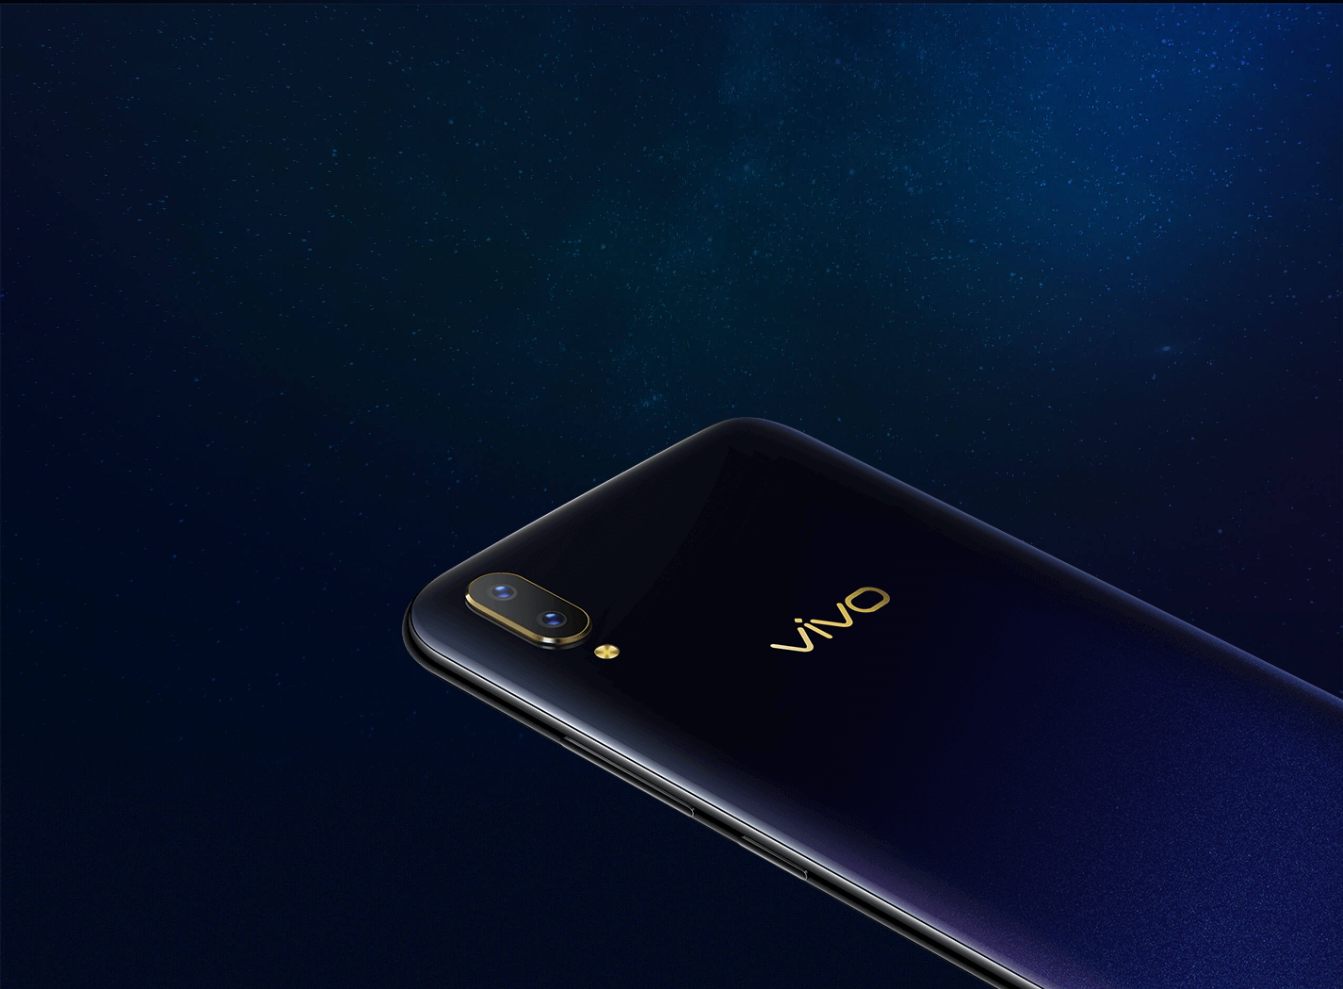 مزايا وعيوب هاتف Vivo المتميز المنتمي للفئة المتوسطة Vivo V11